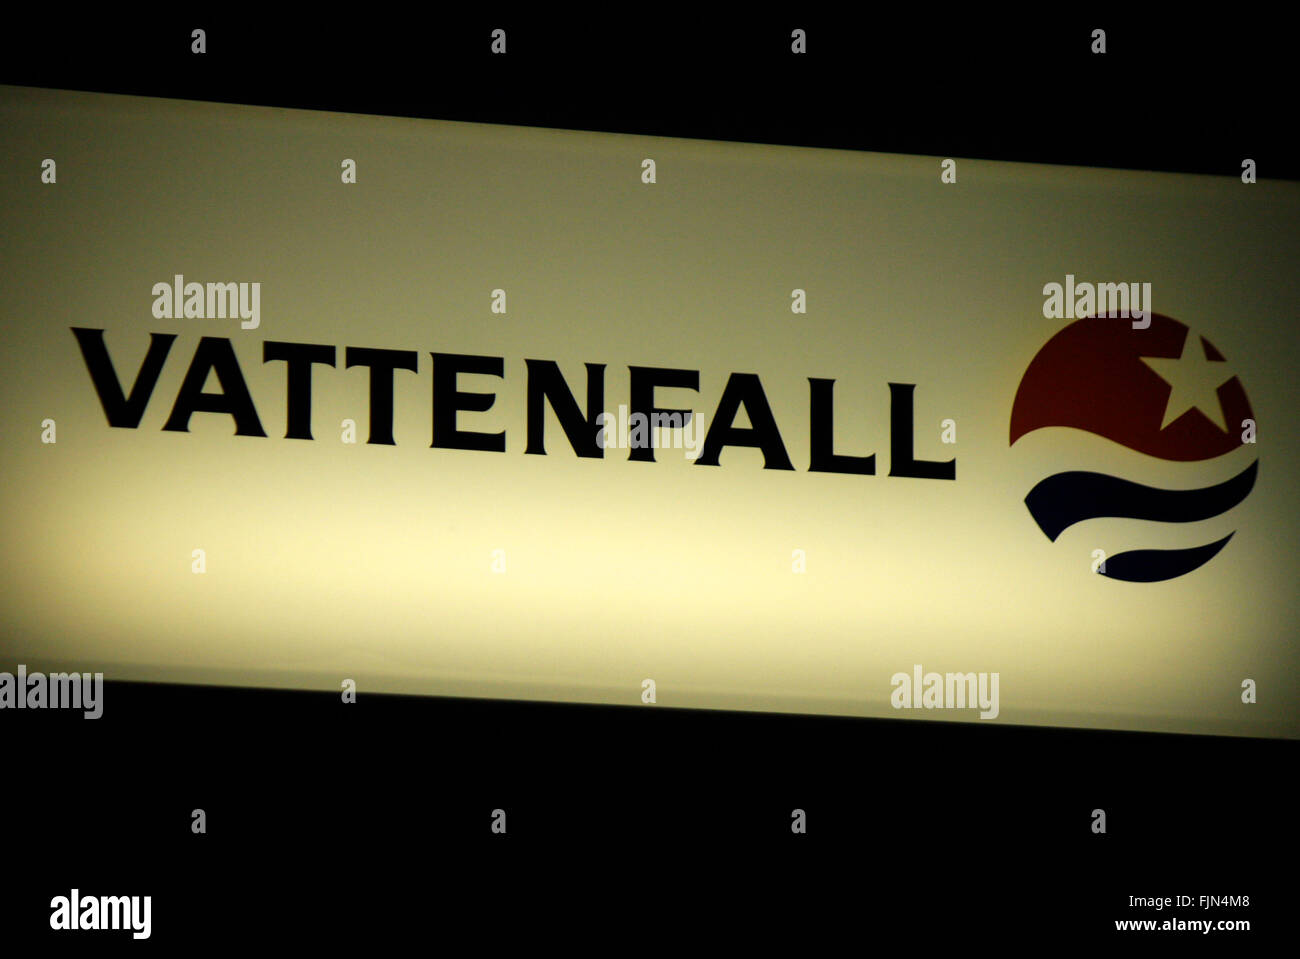 Markenname: 'Vattenfall', Berlin. Stock Photo